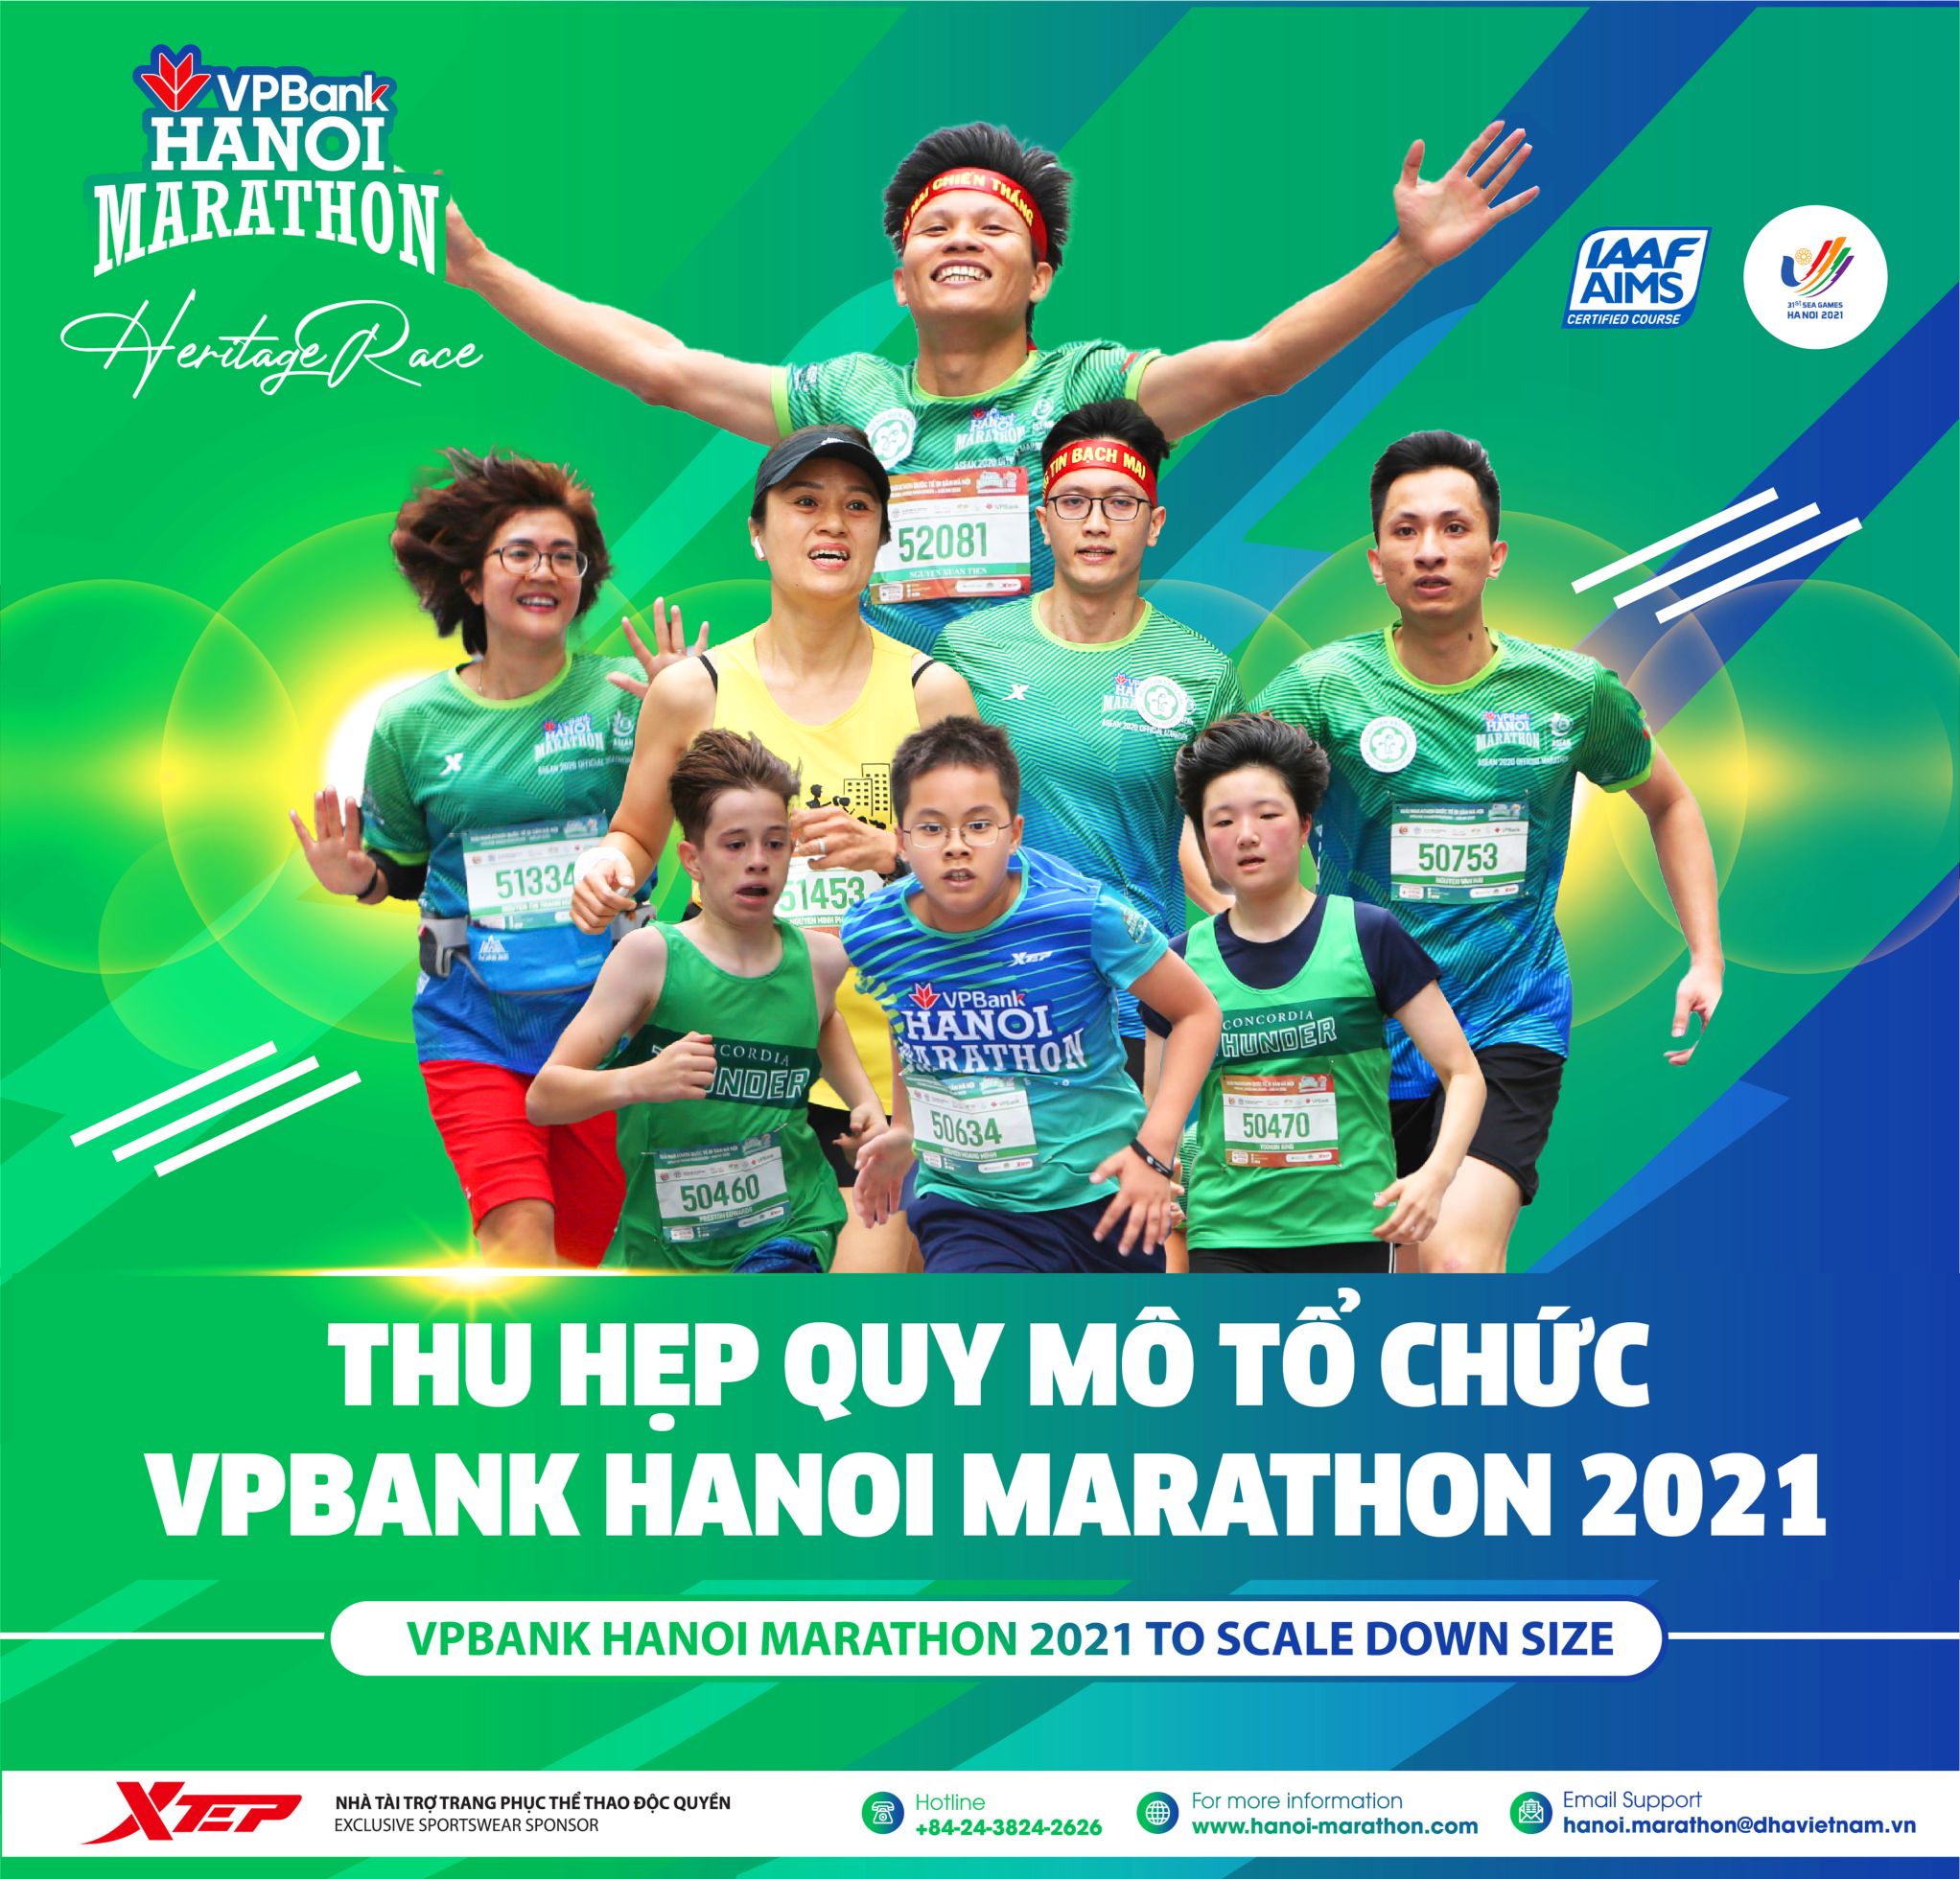 VPBank Hanoi Marathon 2021 To Scale Down Size